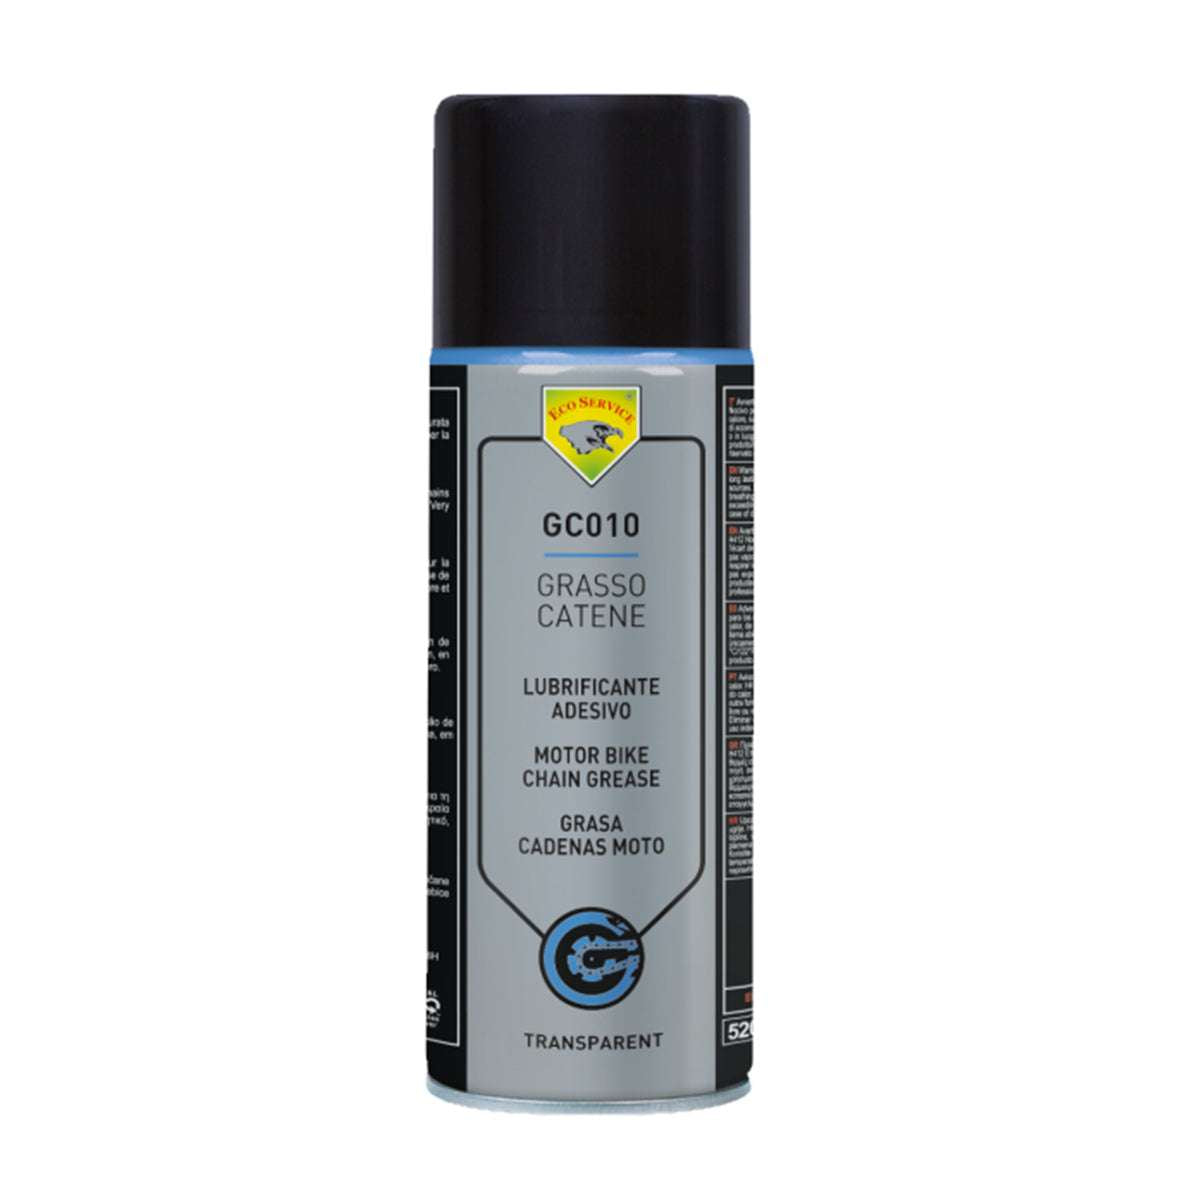 Grasso Catene Spray 400ml lubrificazione catena moto - Eco Service GC010